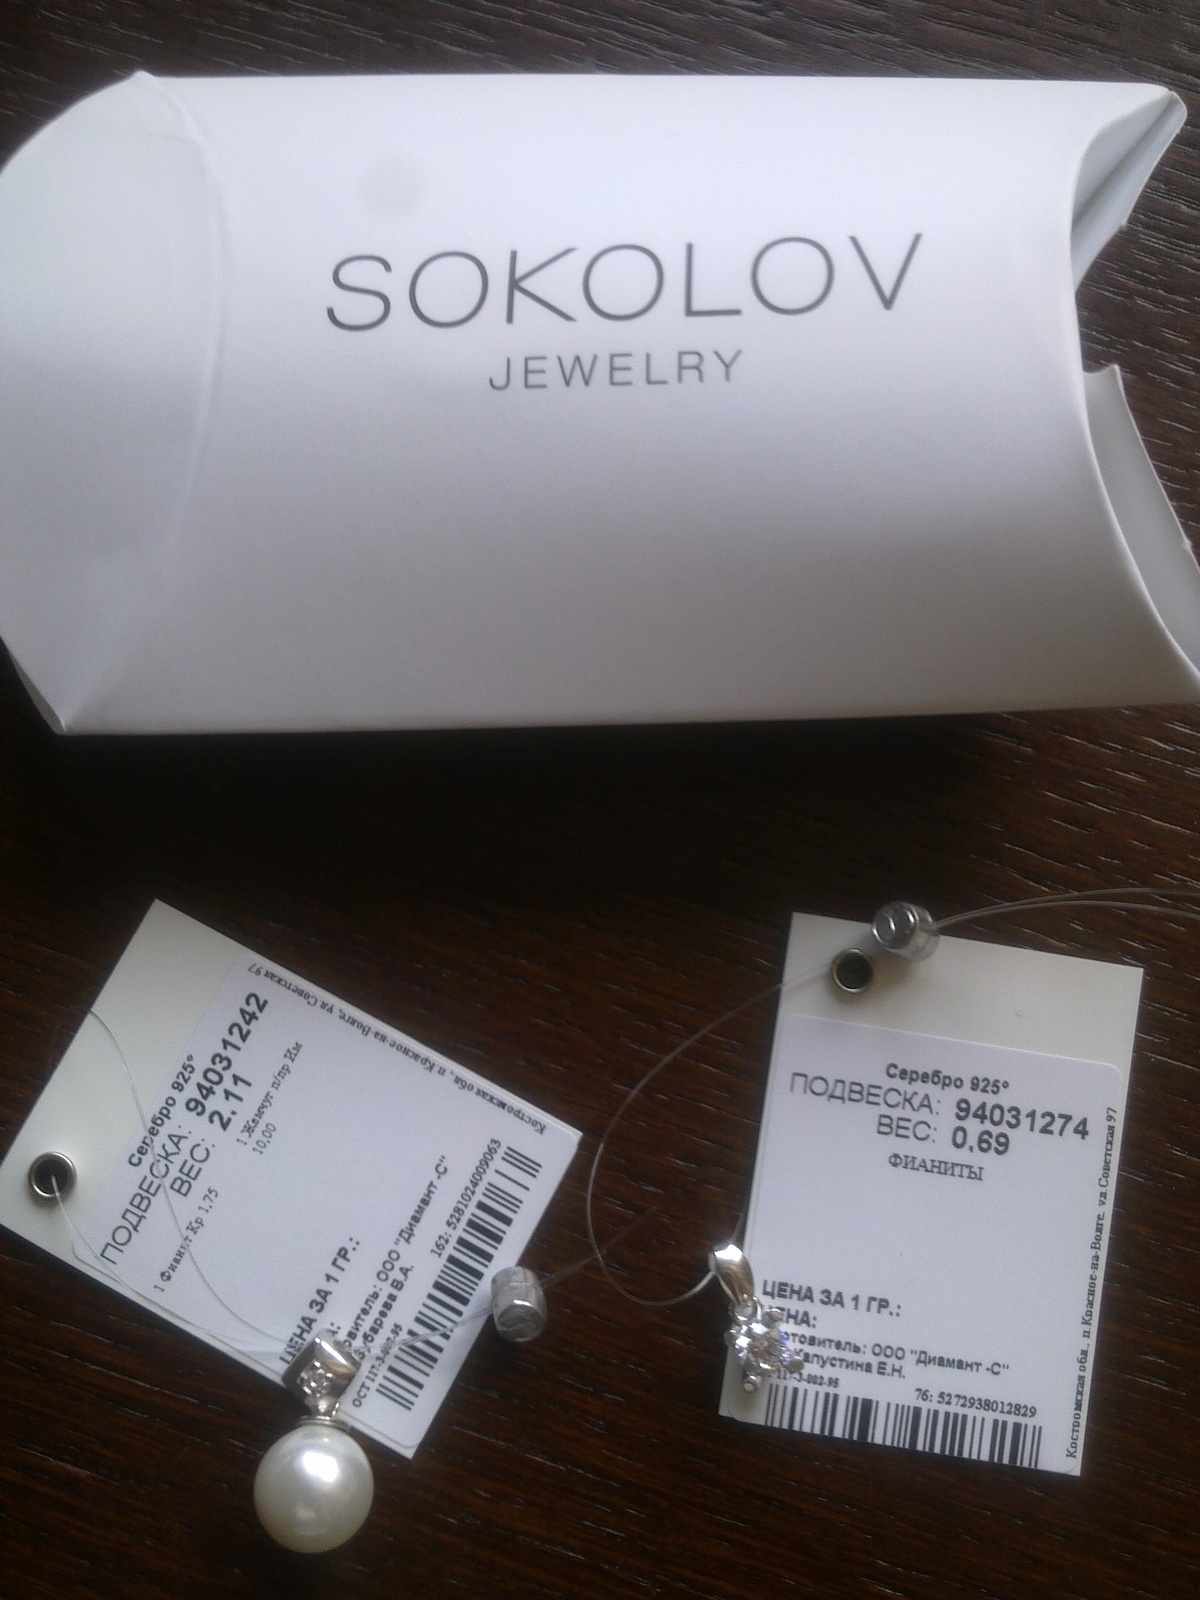 Получить подарок от соколов. SOKOLOV упаковка. Подарок от Соколов. Пакетик SOKOLOV. SOKOLOV коробка.